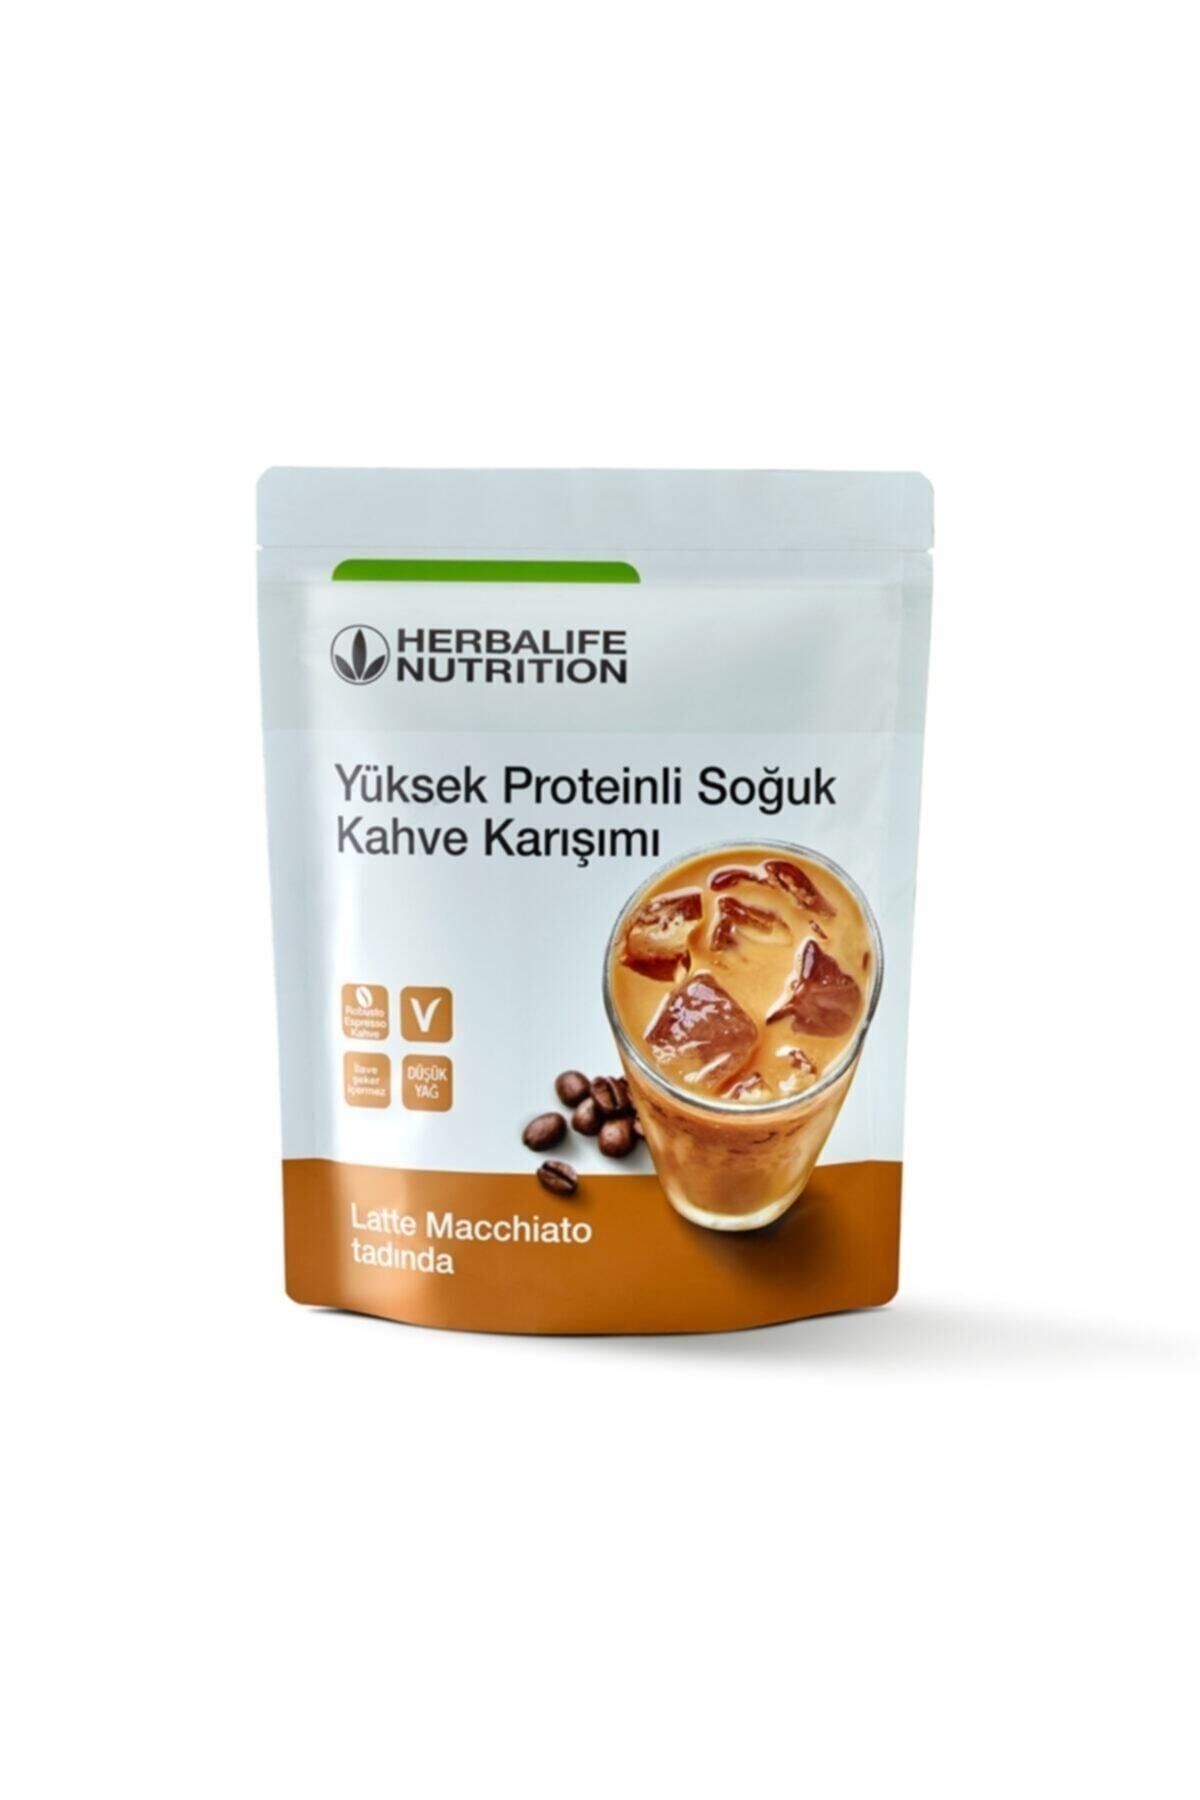 Herbalife Yüksek Proteinli Soğuk Kahve Karışımı Latte Macchiato 308 G